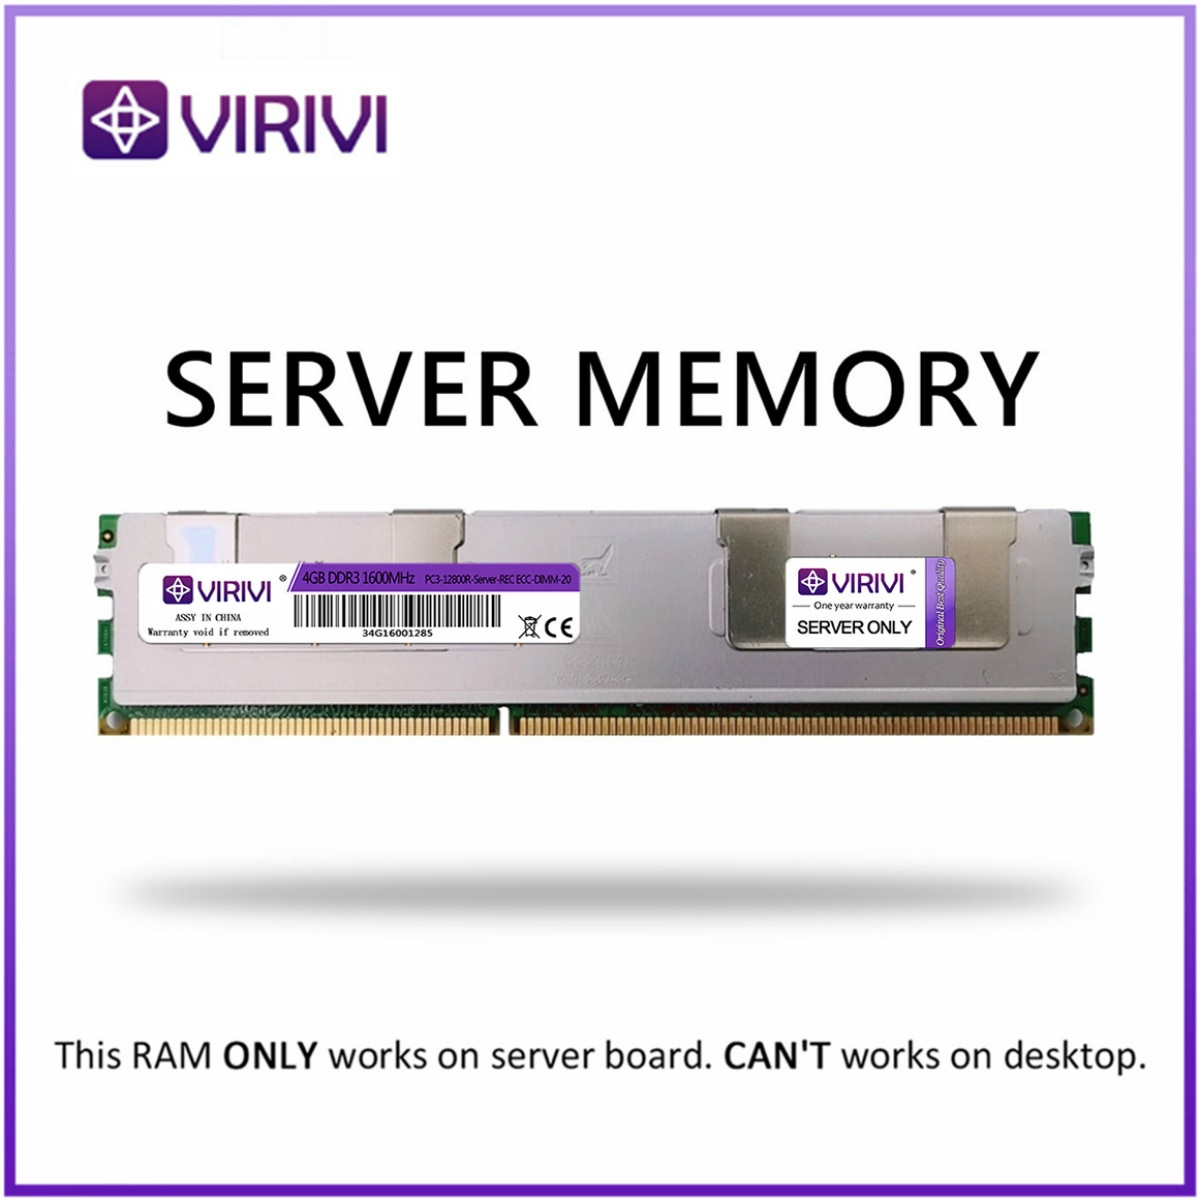 Серверная оперативная память с радиатором VIRIVI DDR3 8GB